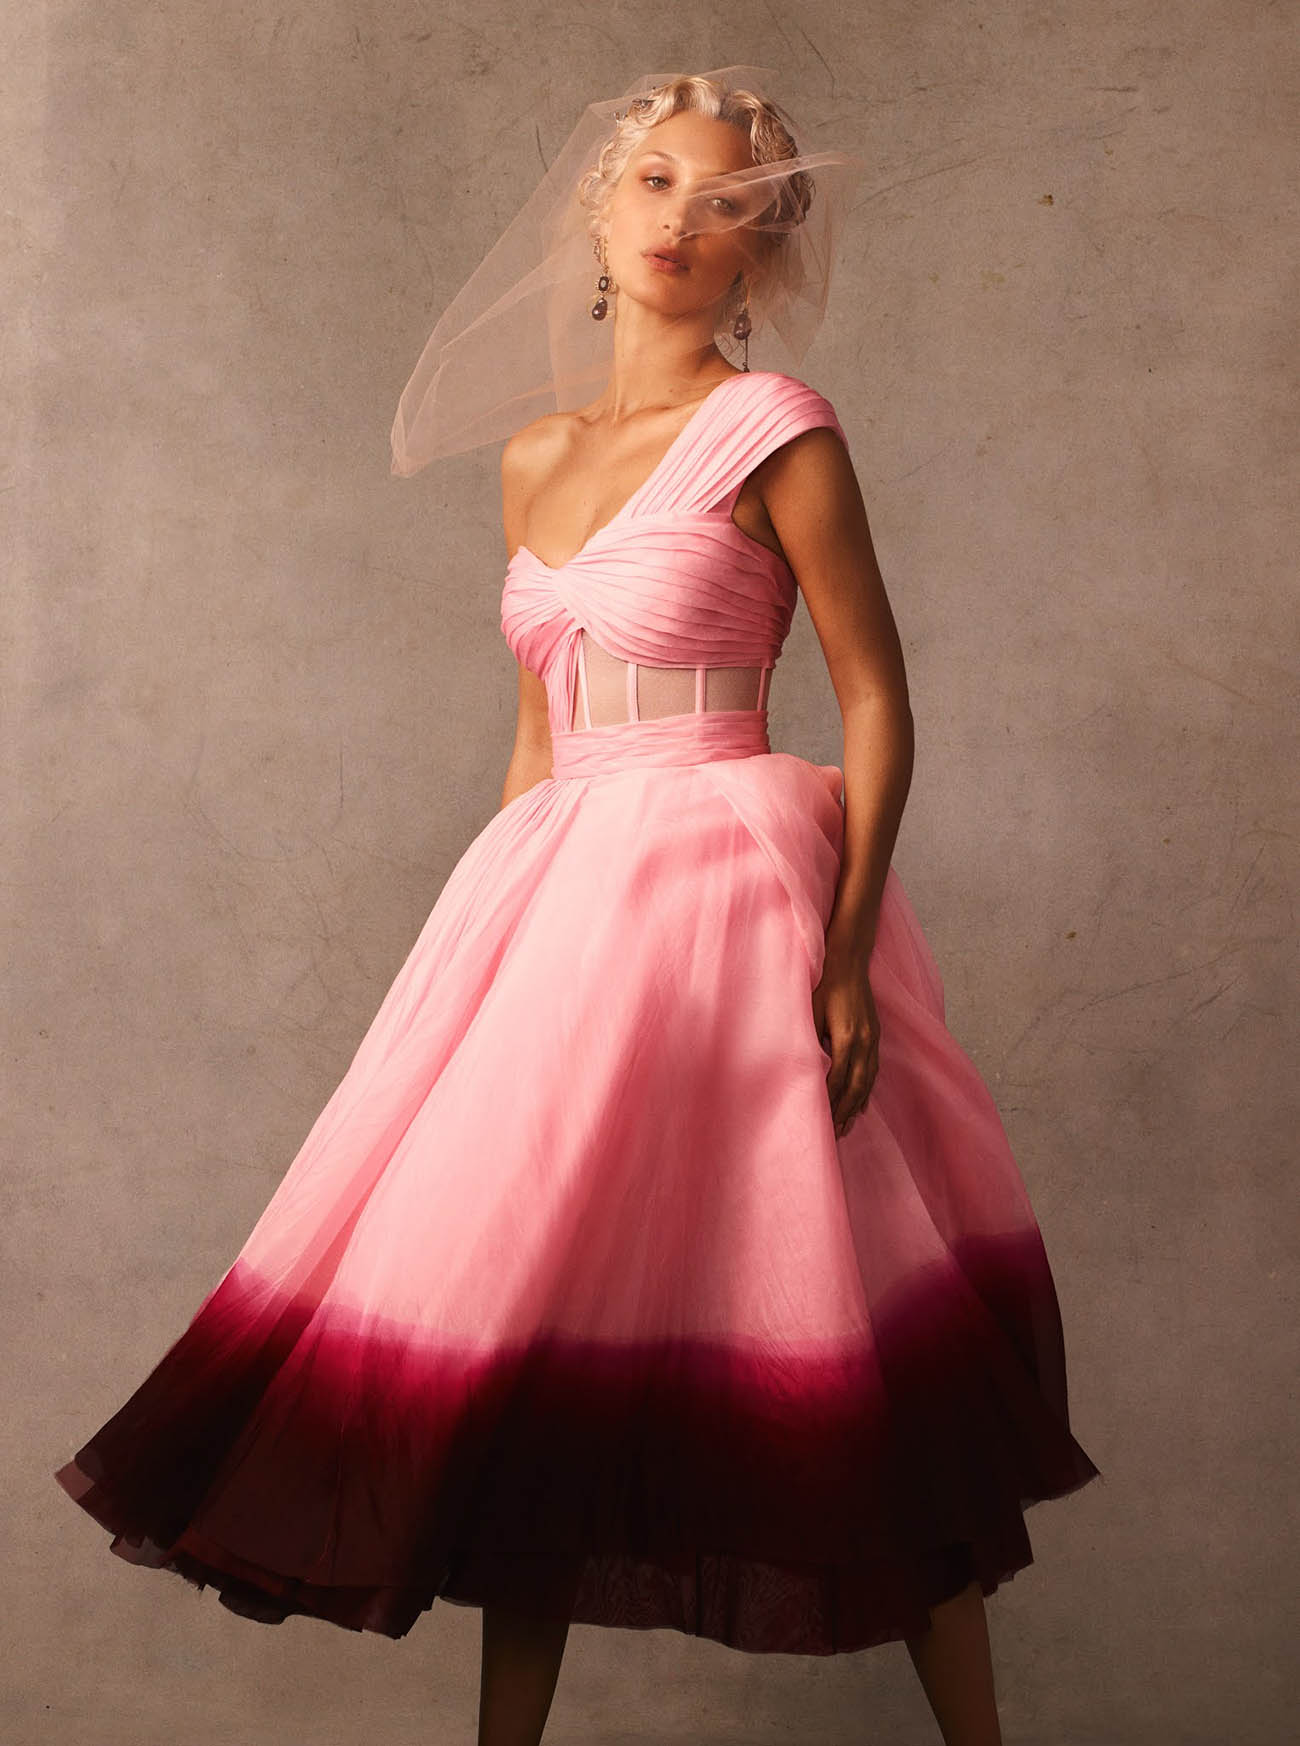 Bella Hadid by Christian MacDonald for Vogue US November 2020